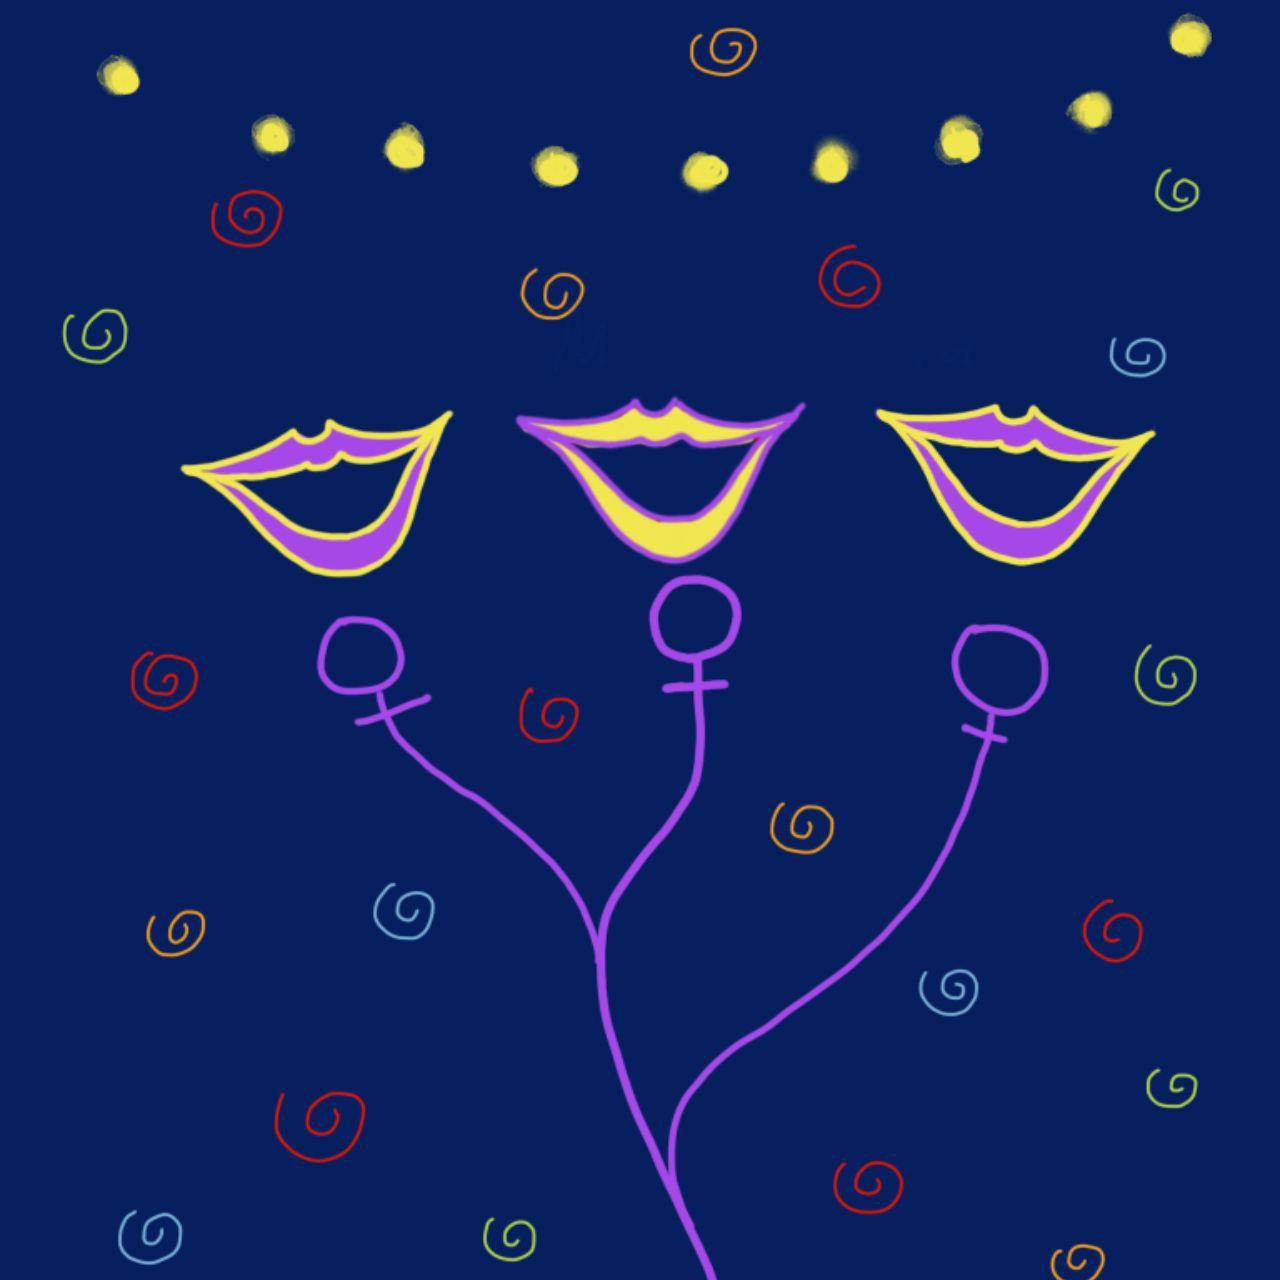 Ilustración donde hay tres bocas sonrientes en micrófonos que recuerdan al símbolo de la mujer. En el fondo hay guirnaldas en un fondo azul oscuro